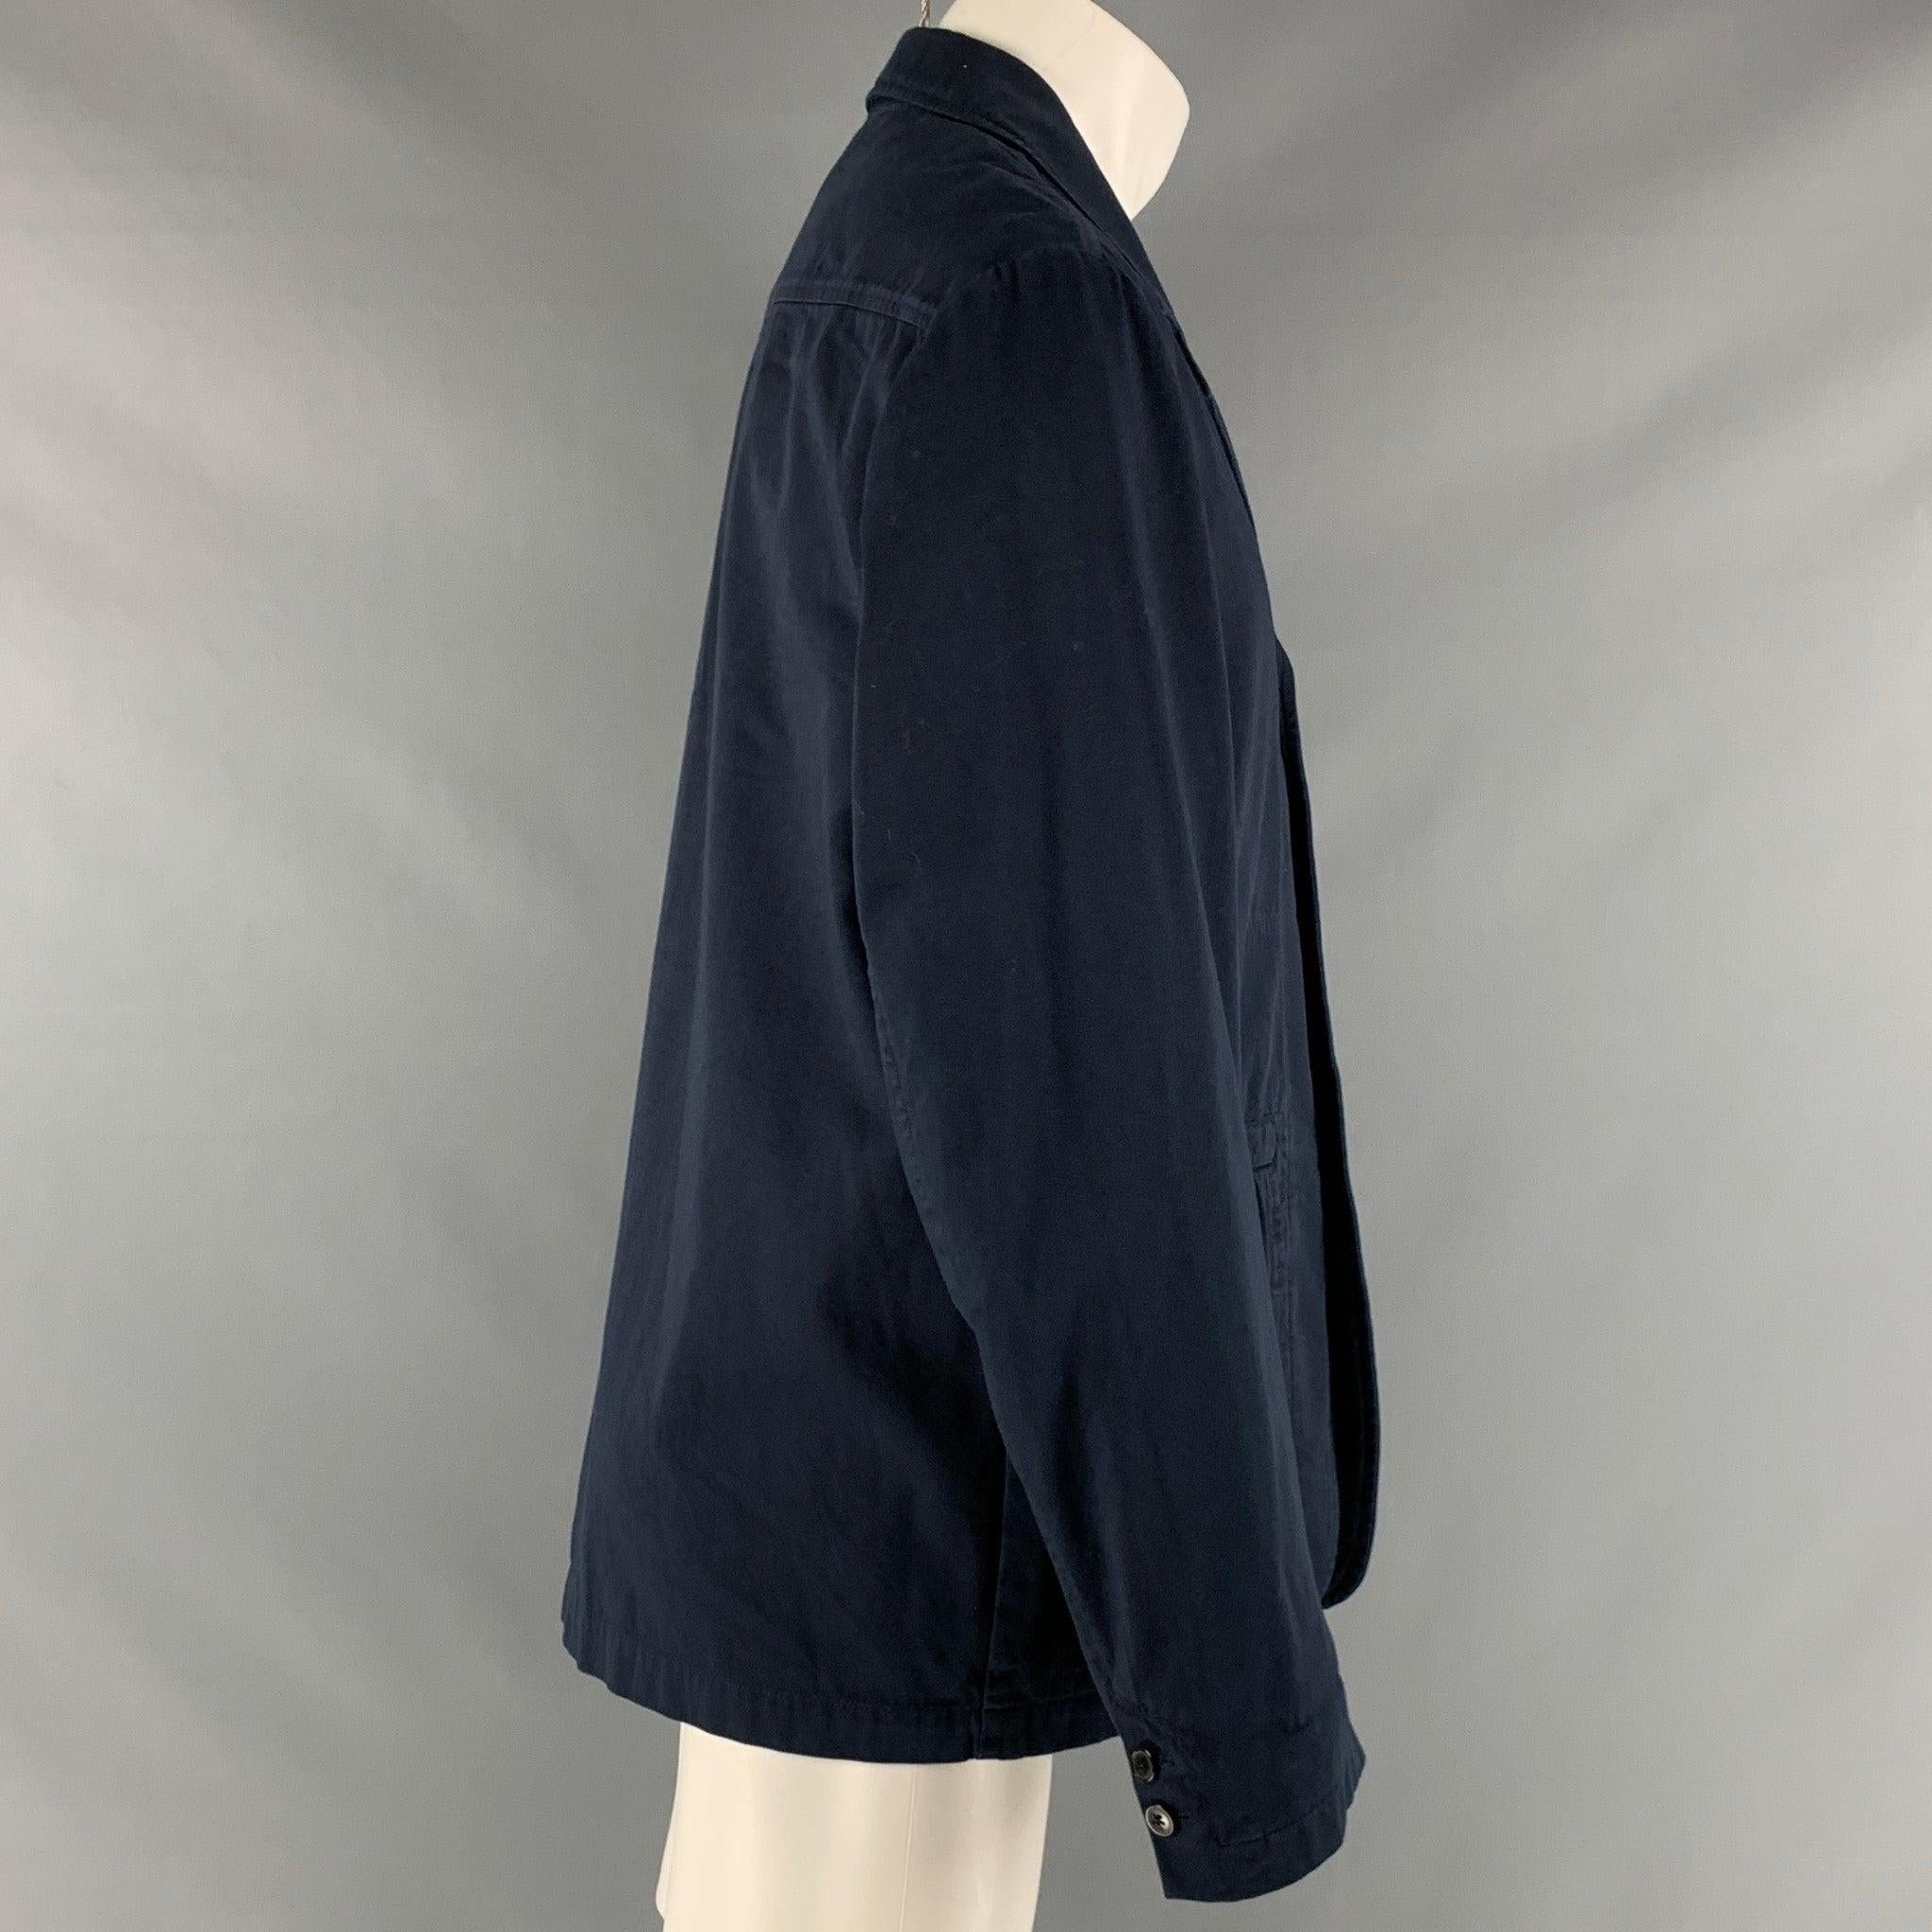 Le manteau sport DRIES VAN NOTEN est réalisé en sergé de coton bleu marine et présente une coupe boutonnée, des poches à rabat et un revers à cran. Très bon état d'origine. Signes mineurs d'usure. 

Marqué :   50 

Mesures : 
 
Épaule : 19 pouces